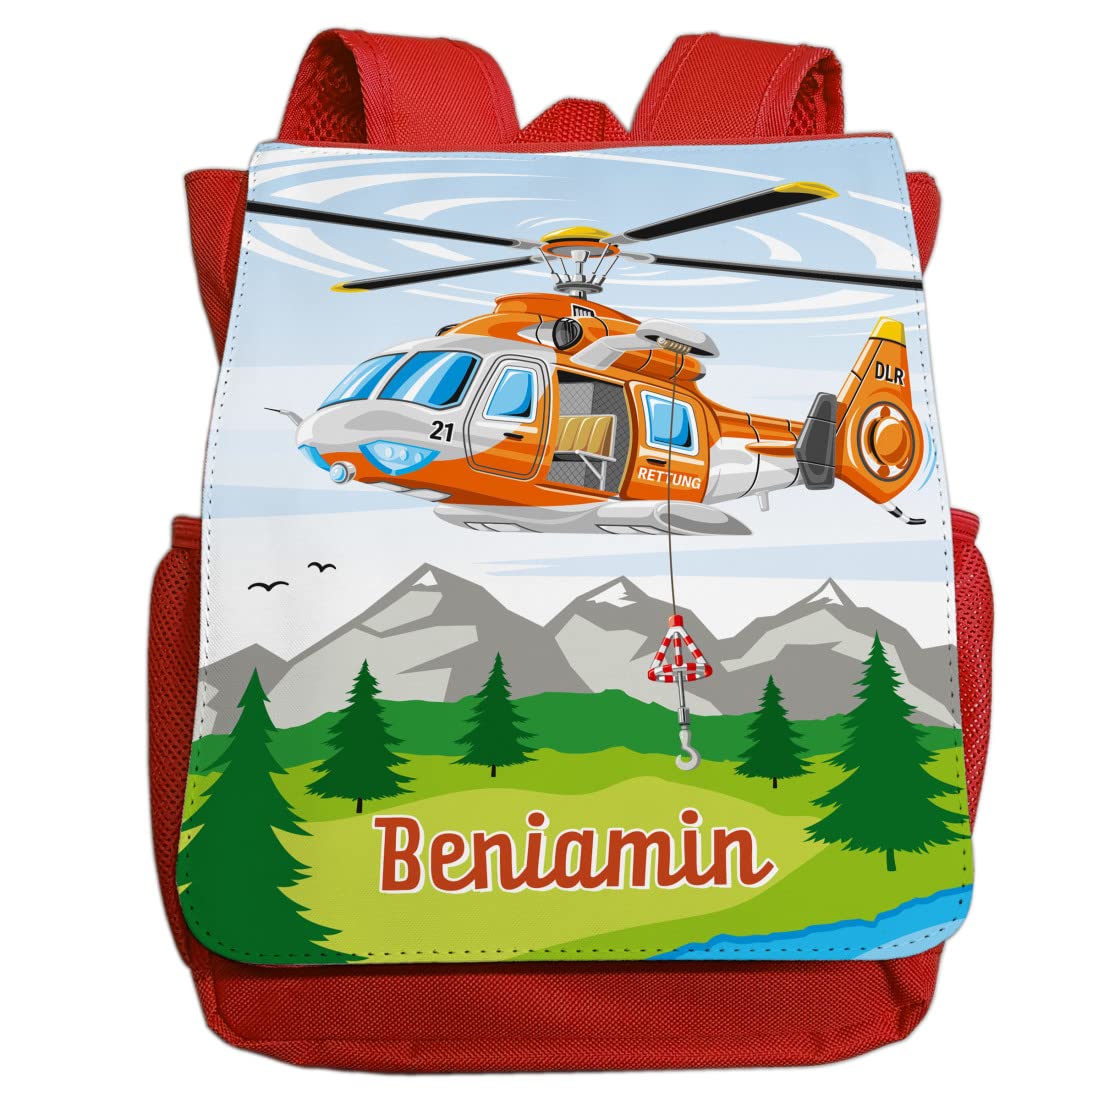 minimutz Kindergartenrucksack Helikopter für Jungen mit Name | Personalisierter Rucksack Rettungs-Hubschrauber für Kinder | Kleiner Freizeitrucksack Kinderrucksack Kita Kindergarten 2-5 Jahre (rot)